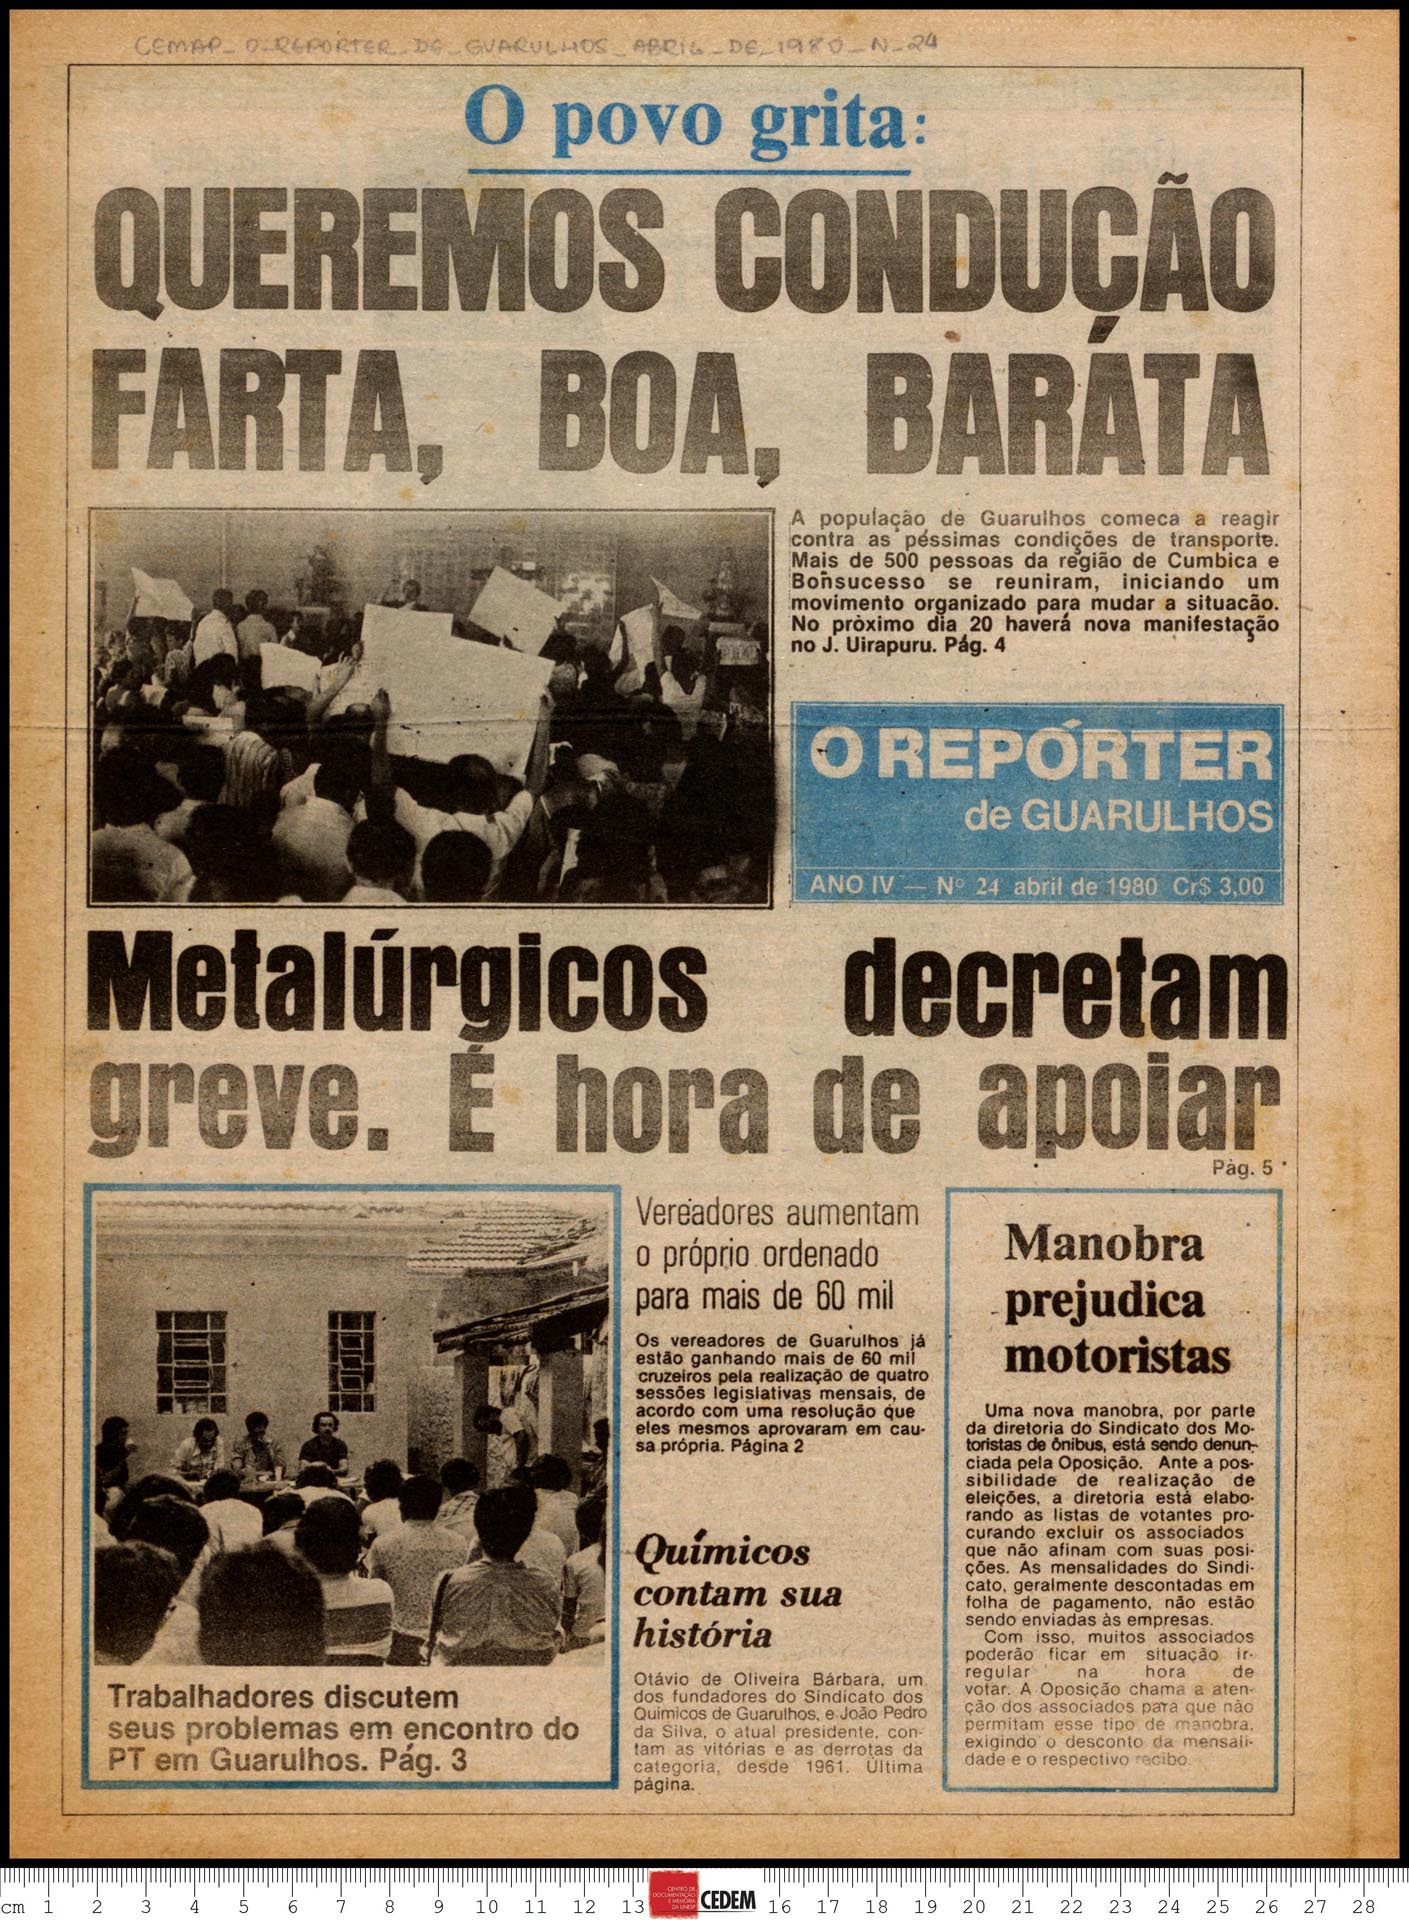 O reportér de Guarulhos - 24 - abr. 1980